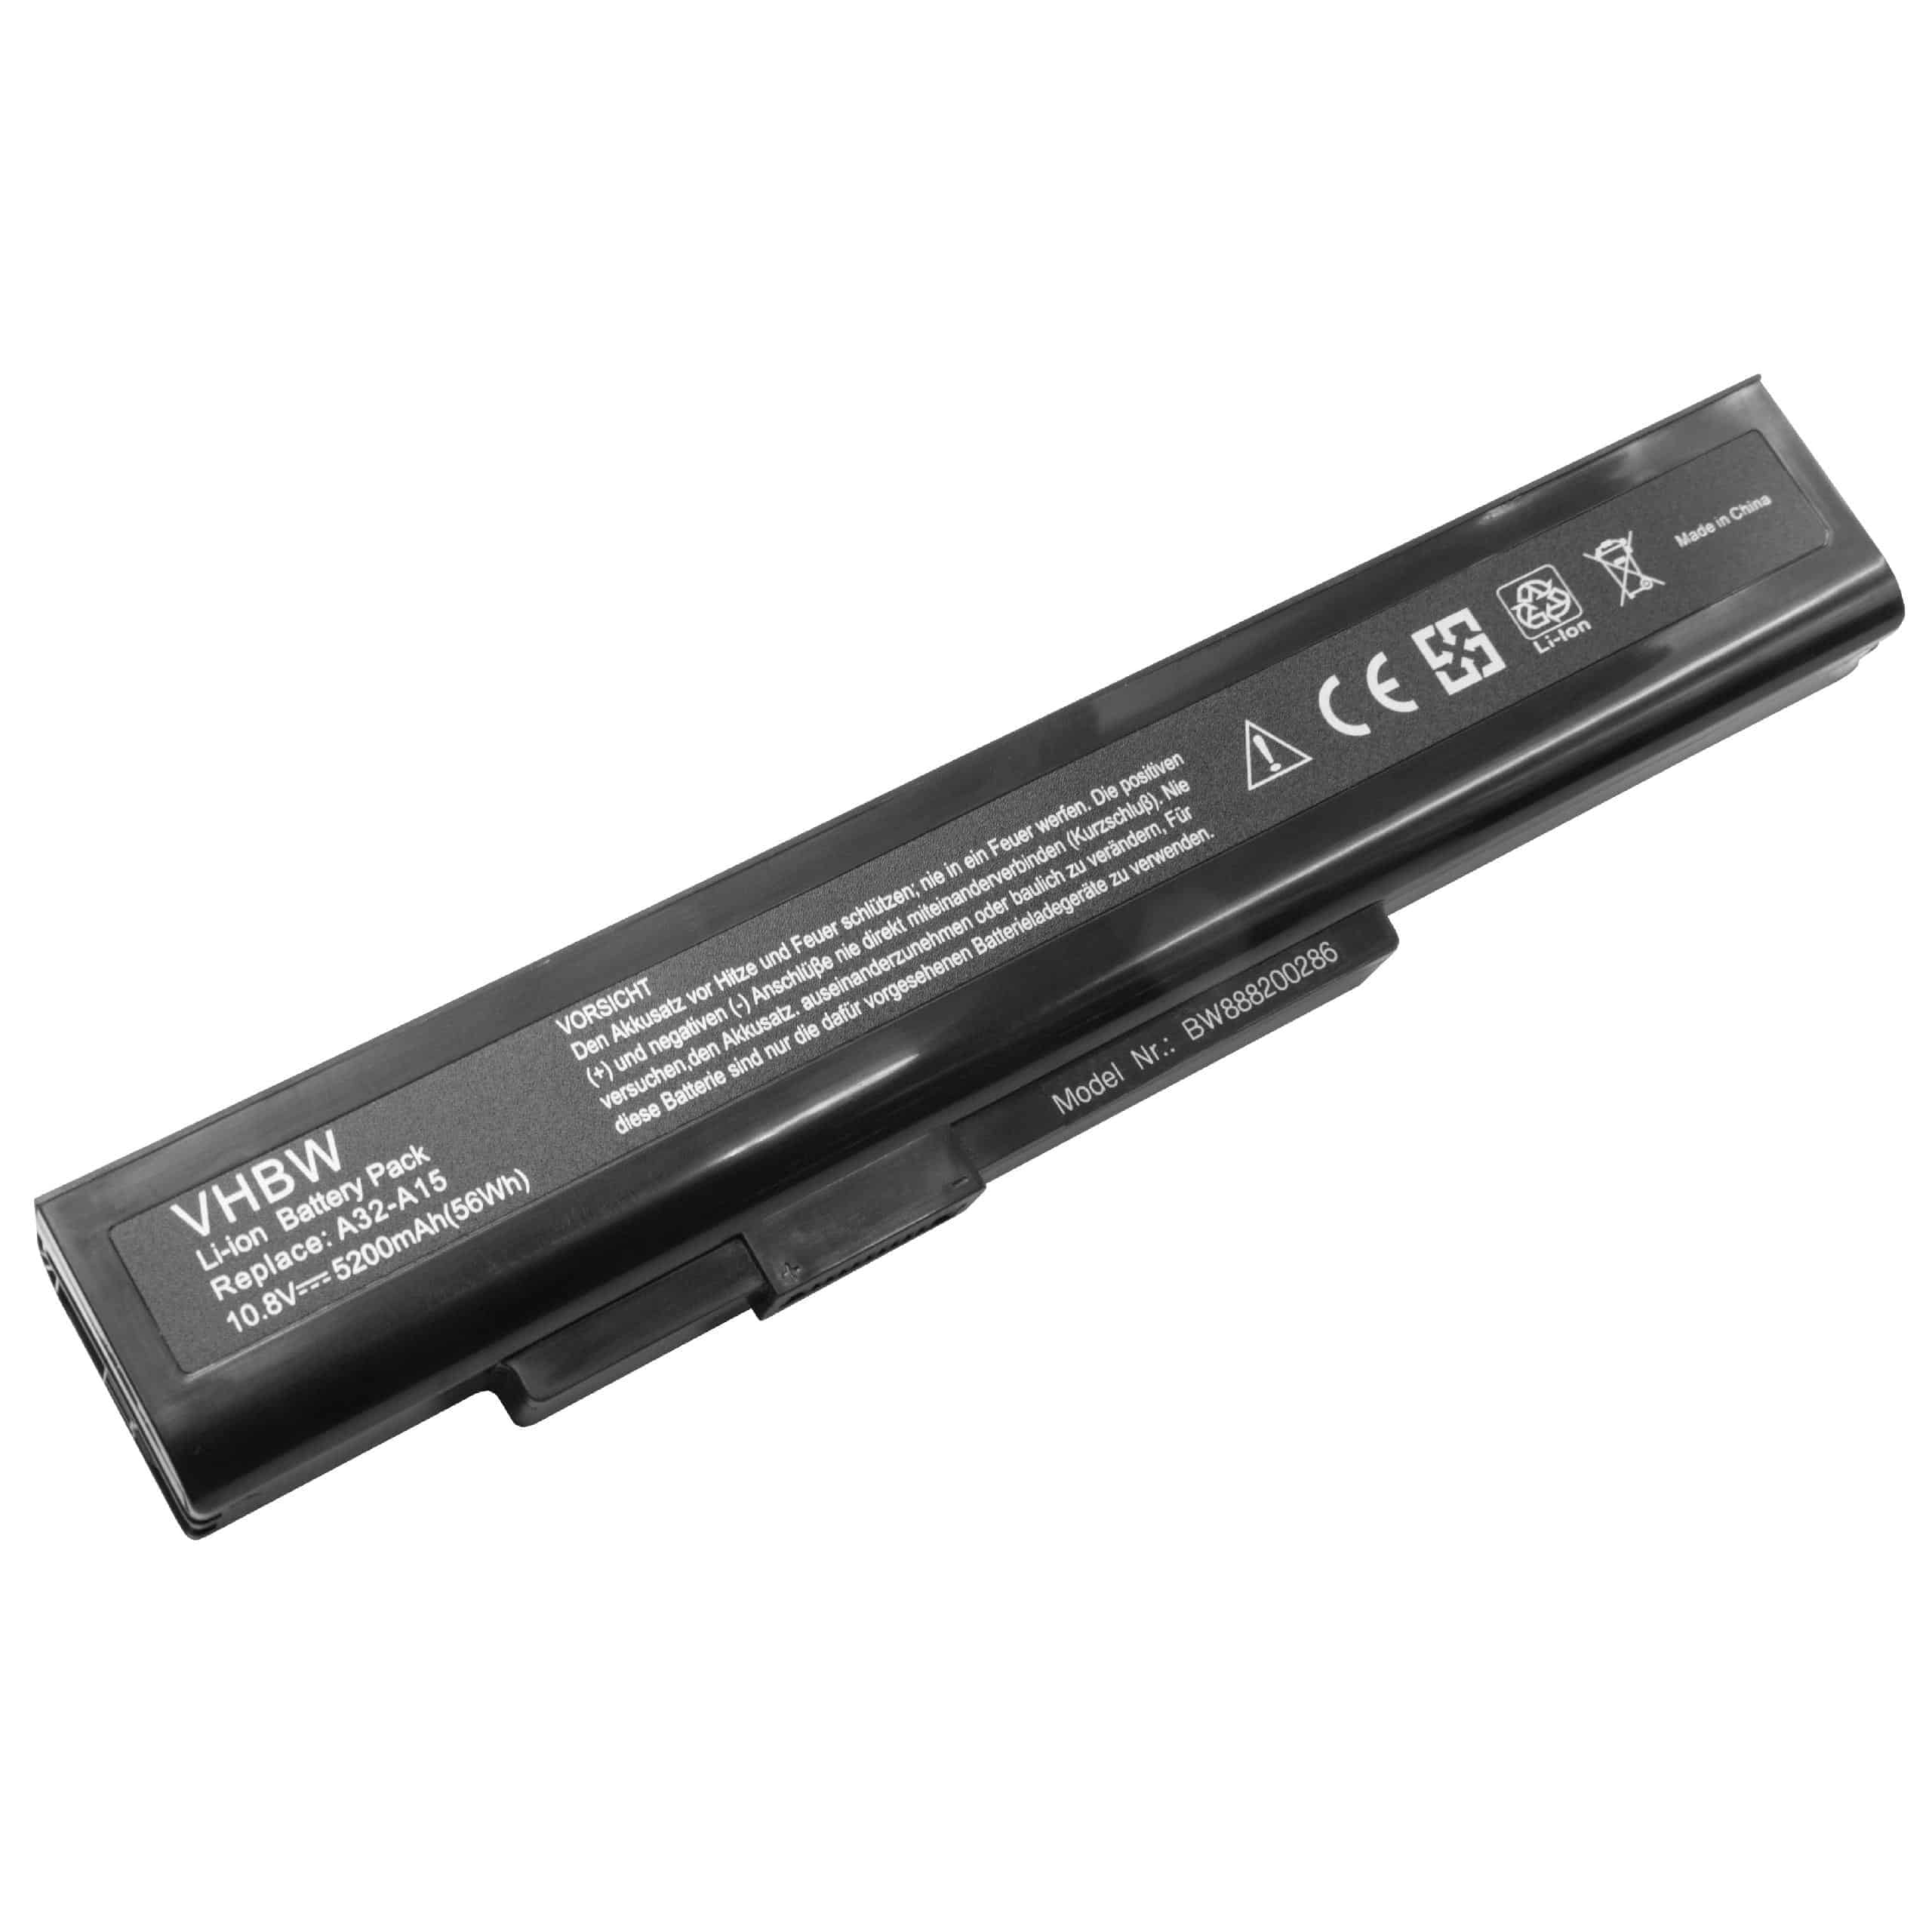 Batería reemplaza Medion A42-H36, A32-A15, A41-A15, A42-A15 para notebook MSI - 5200 mAh 10,8 V Li-Ion negro